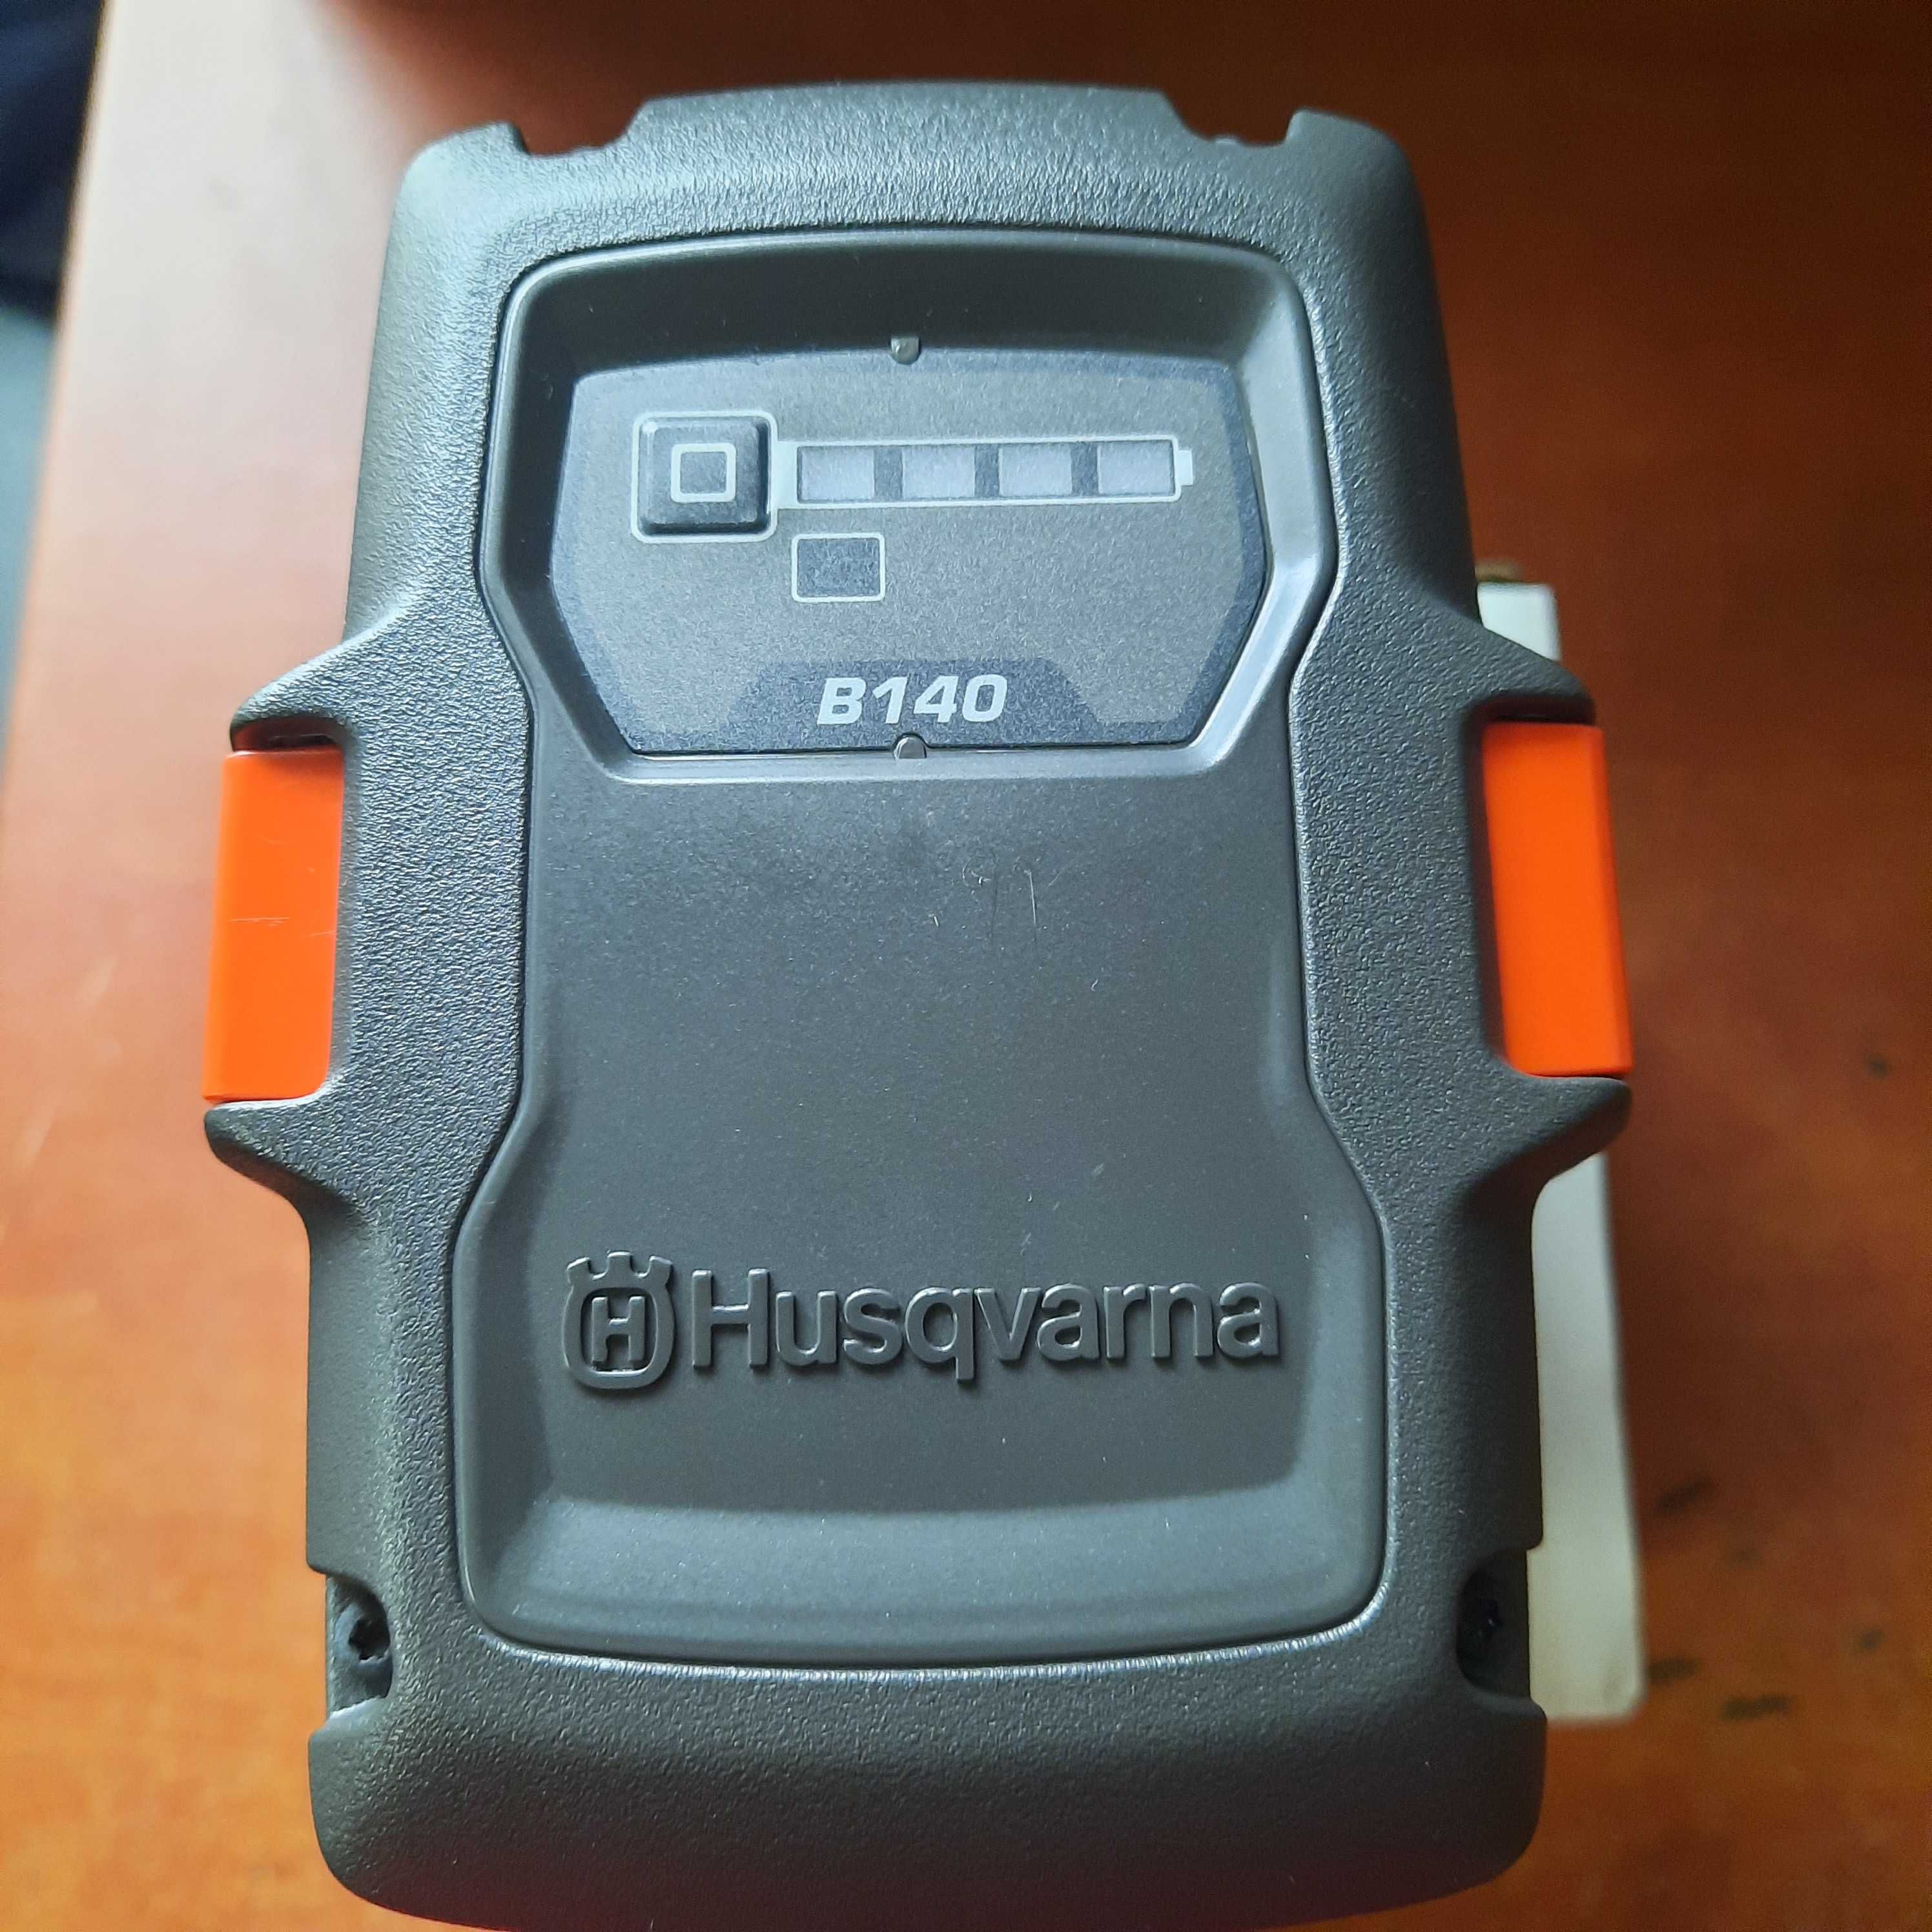 Akumulator Husqvarna BLi 40-B140 BLi20